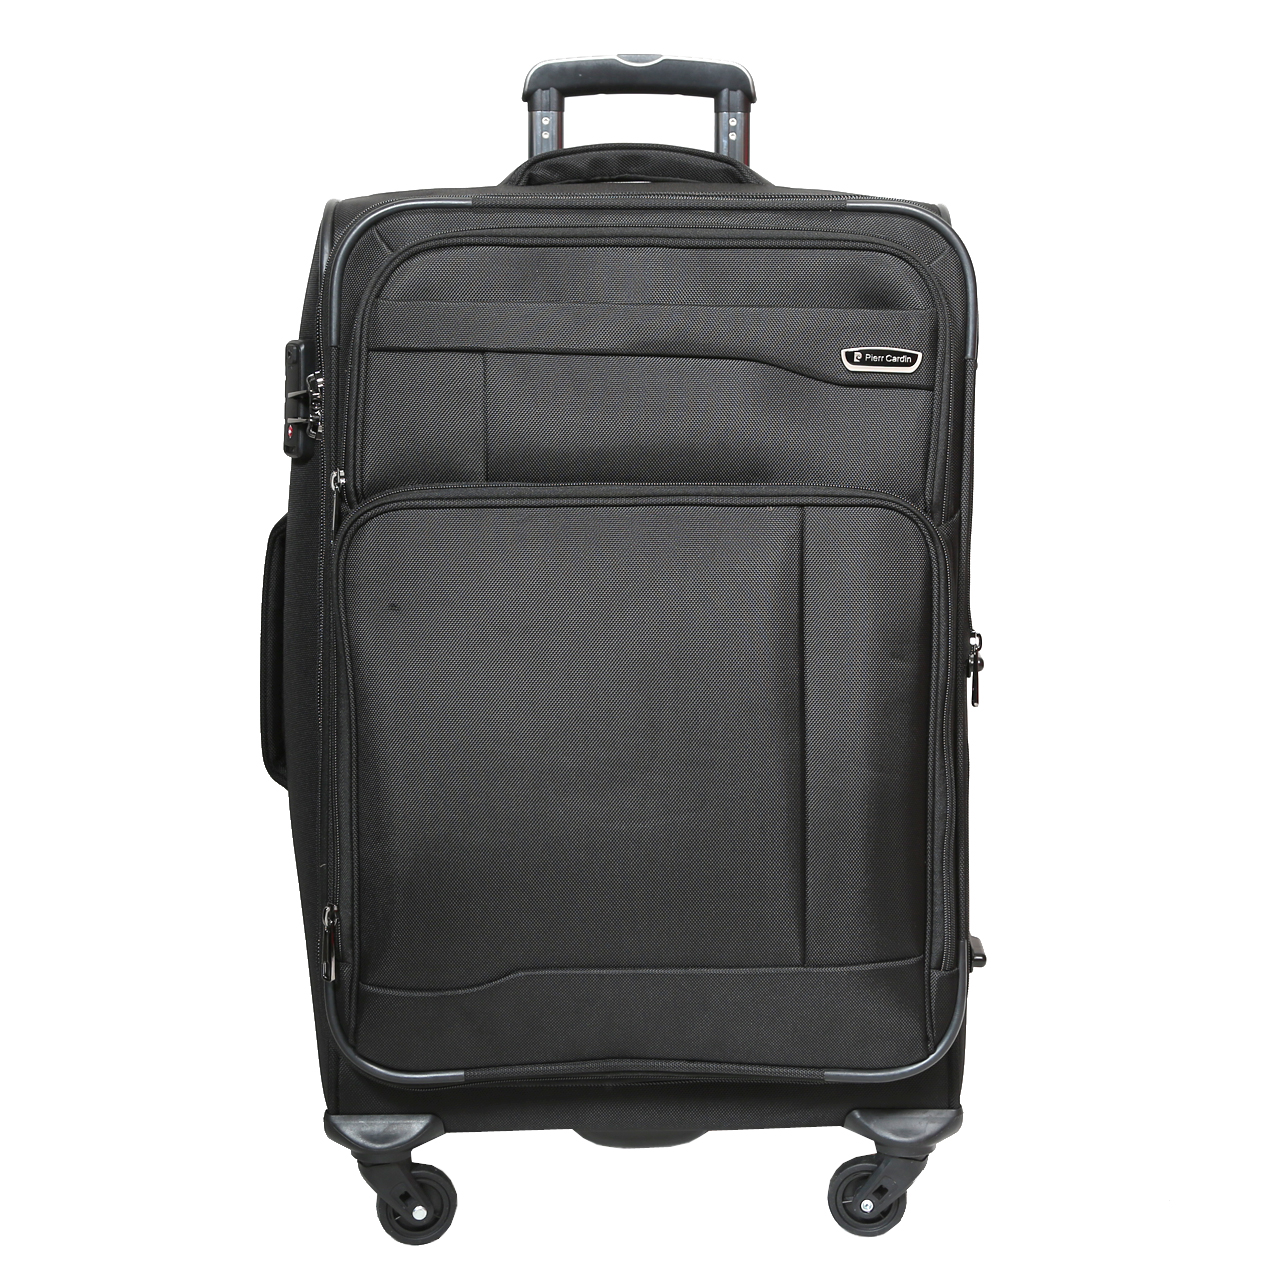  چمدان پیر کاردین مدل SBP1600 سایز متوسط  -  - 4